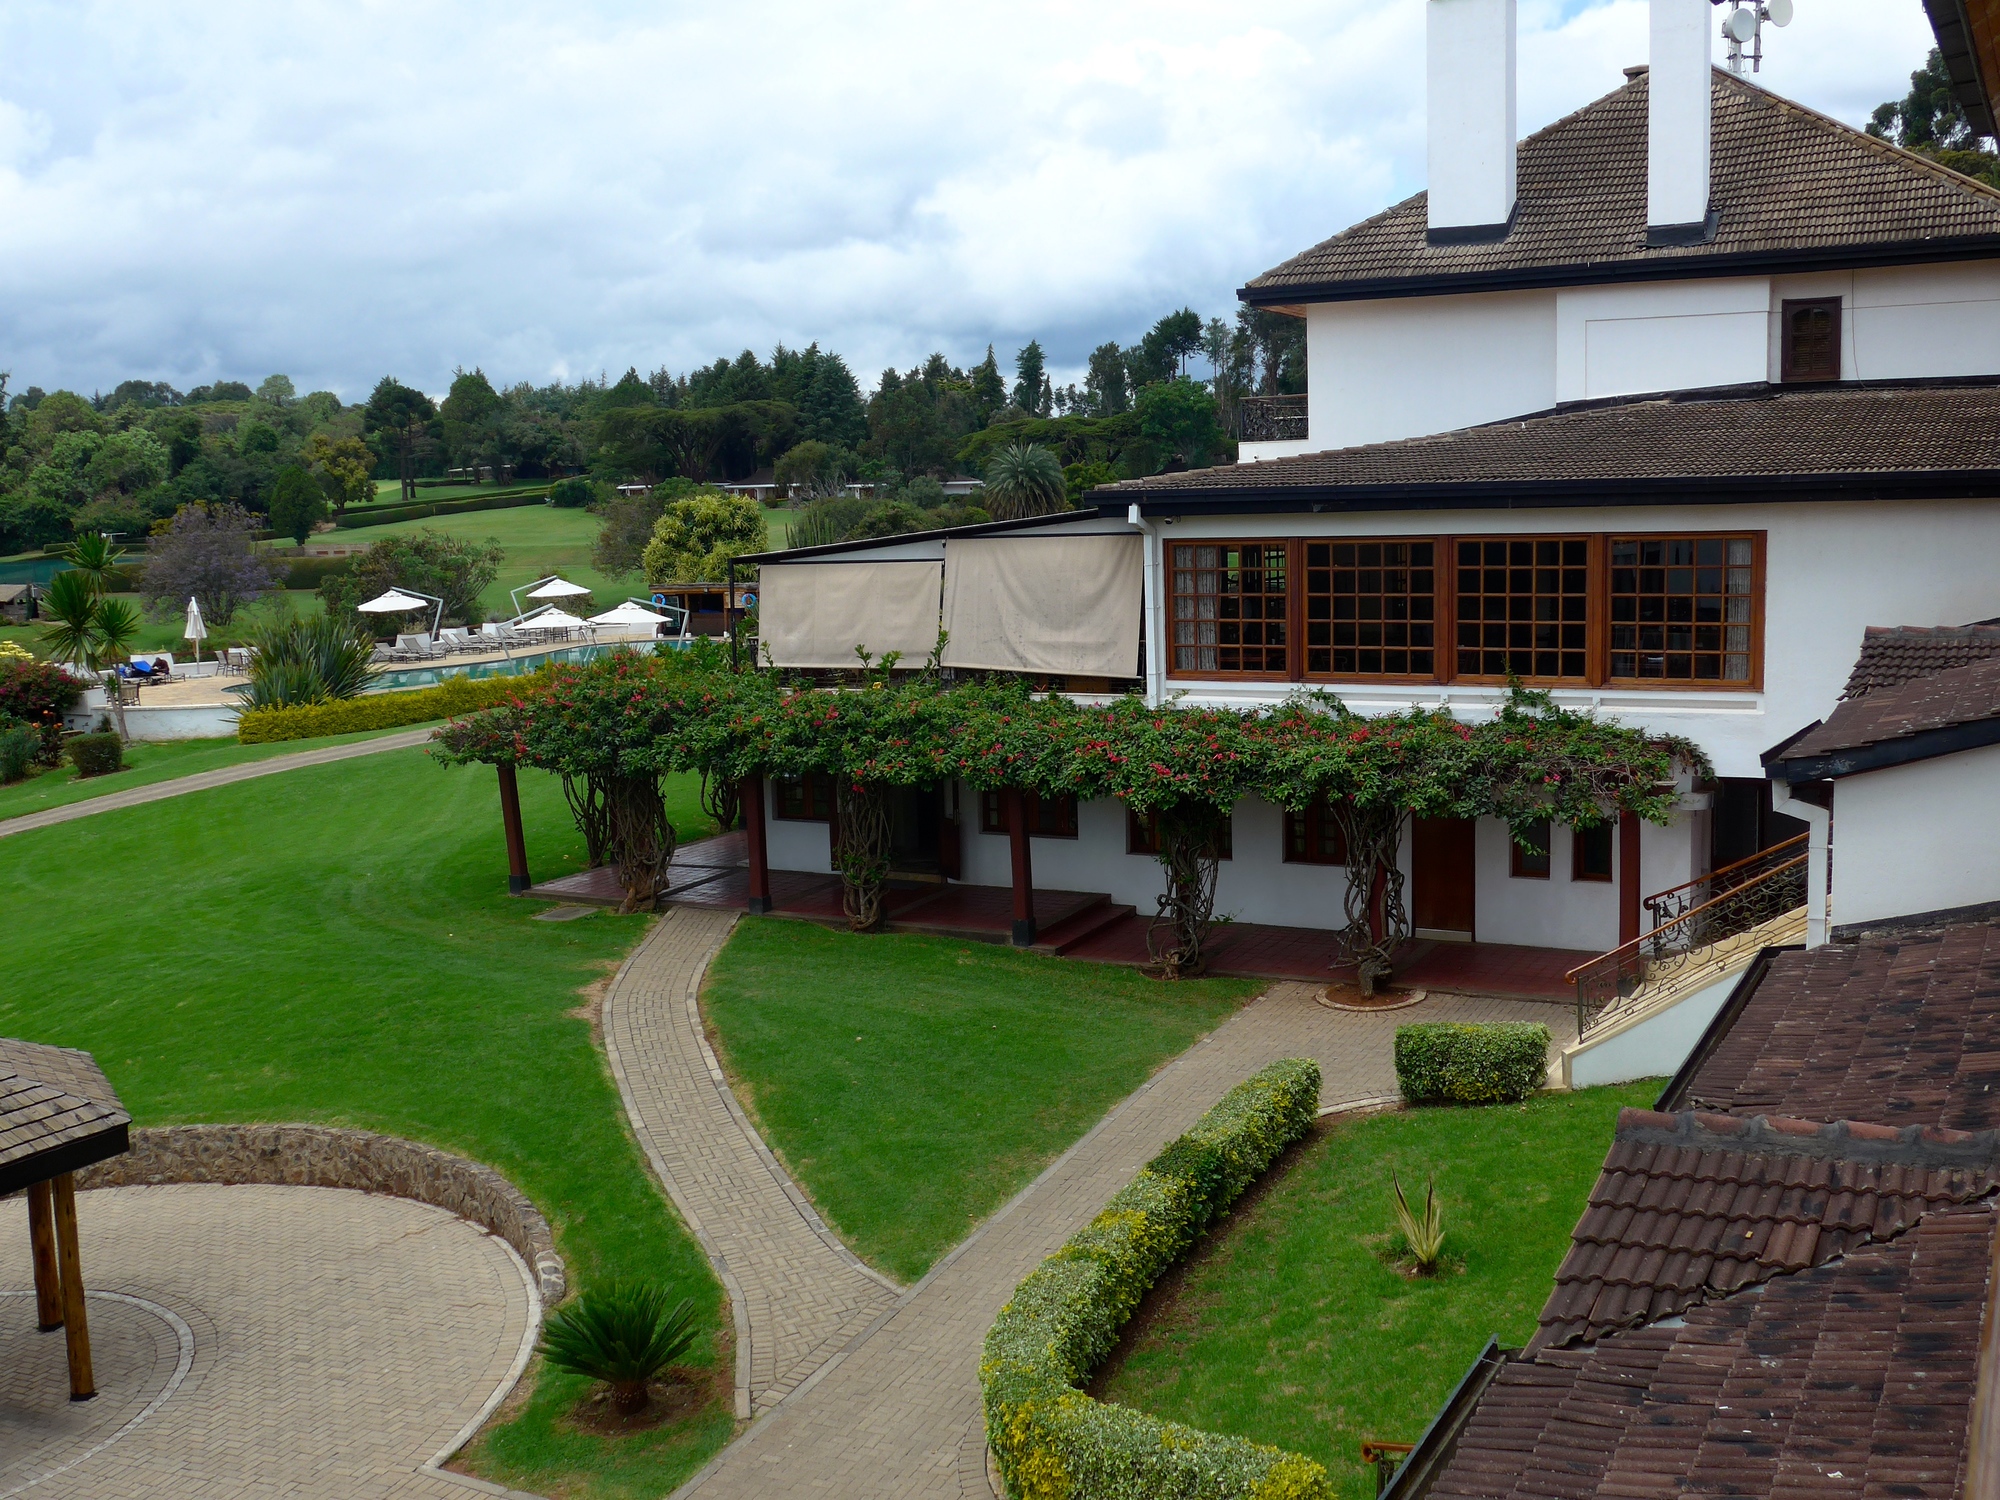 Mount Kenya Hotel